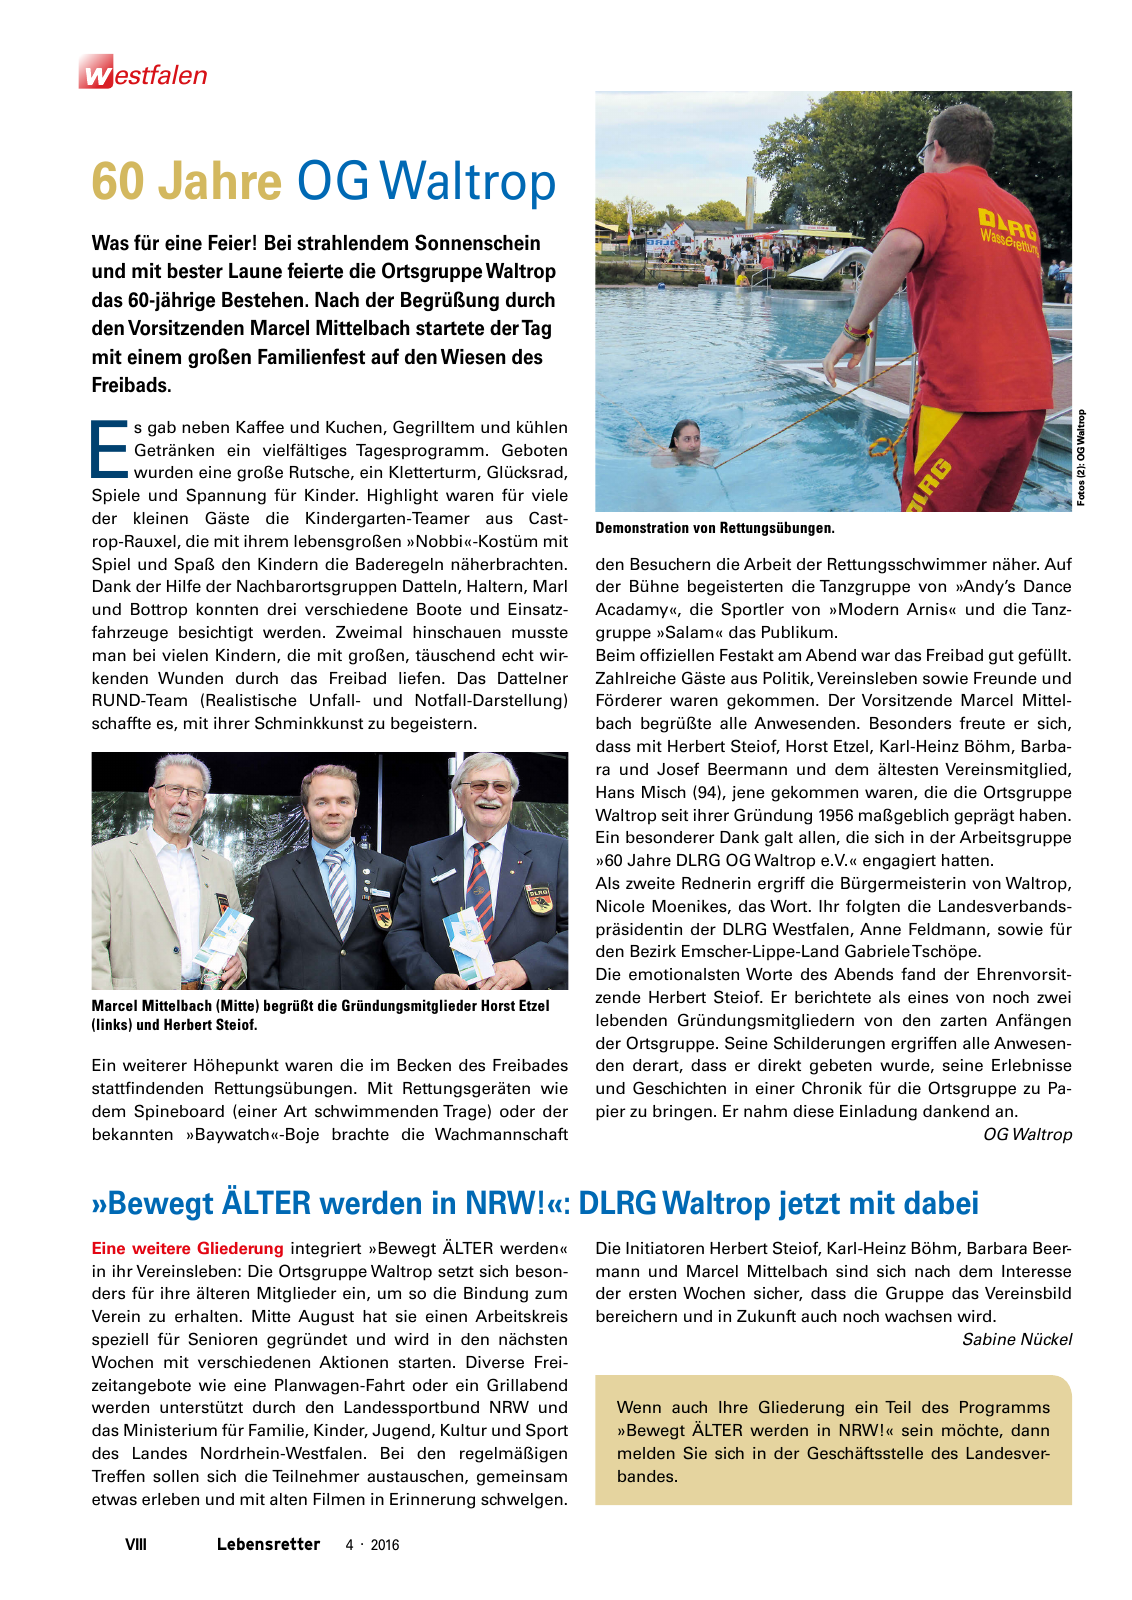 Vorschau Lebensretter 4/2016 - Regionalausgabe Westfalen Seite 10